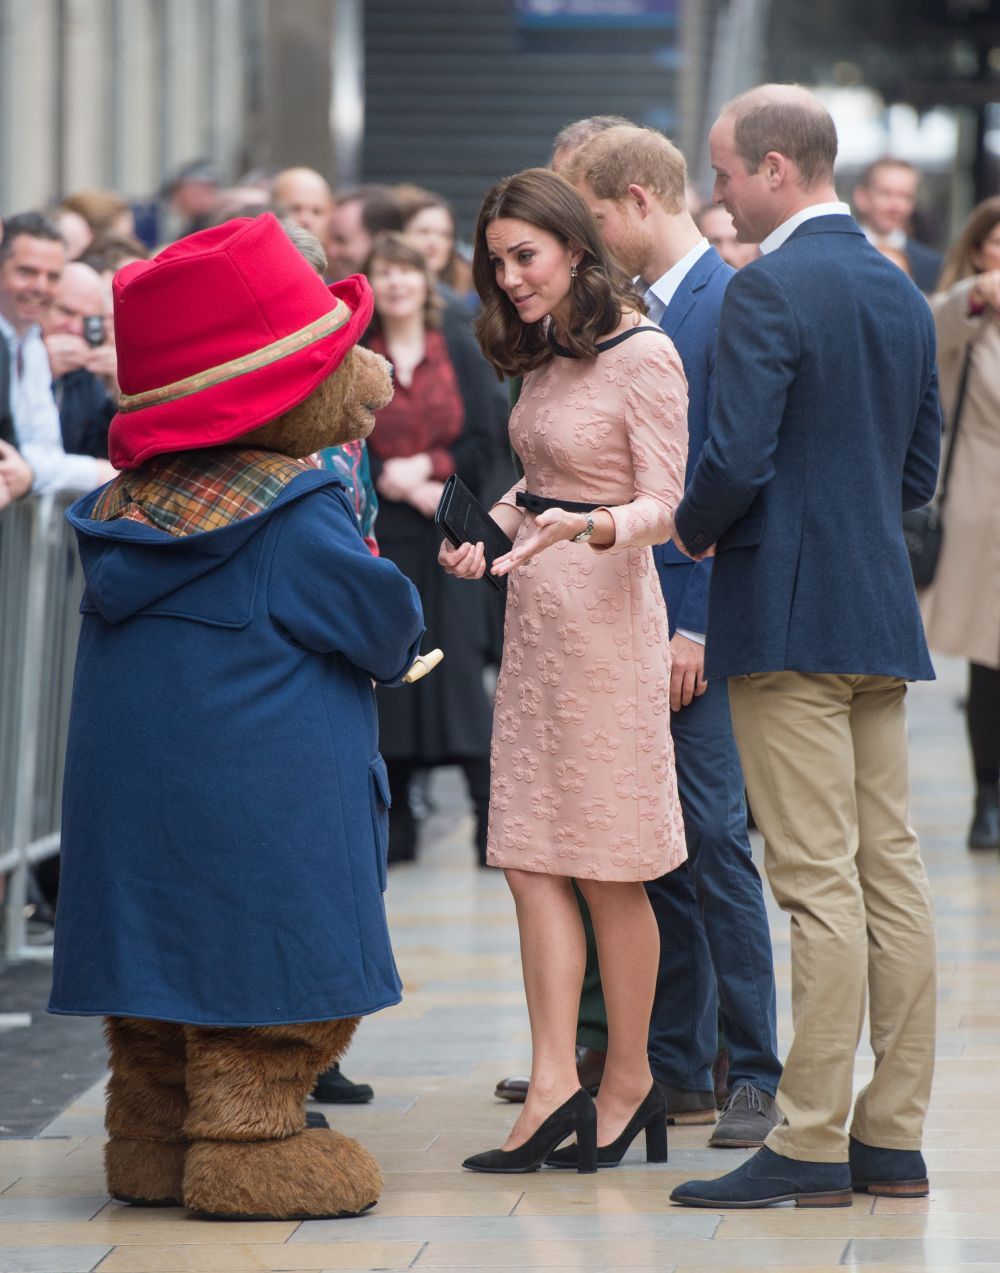 Ducesa de Cambridge, cum n-ai vazut-o pana acum. Cum a fost surprinsa Kate de Middleton, insarcinata cu al 3-lea copil